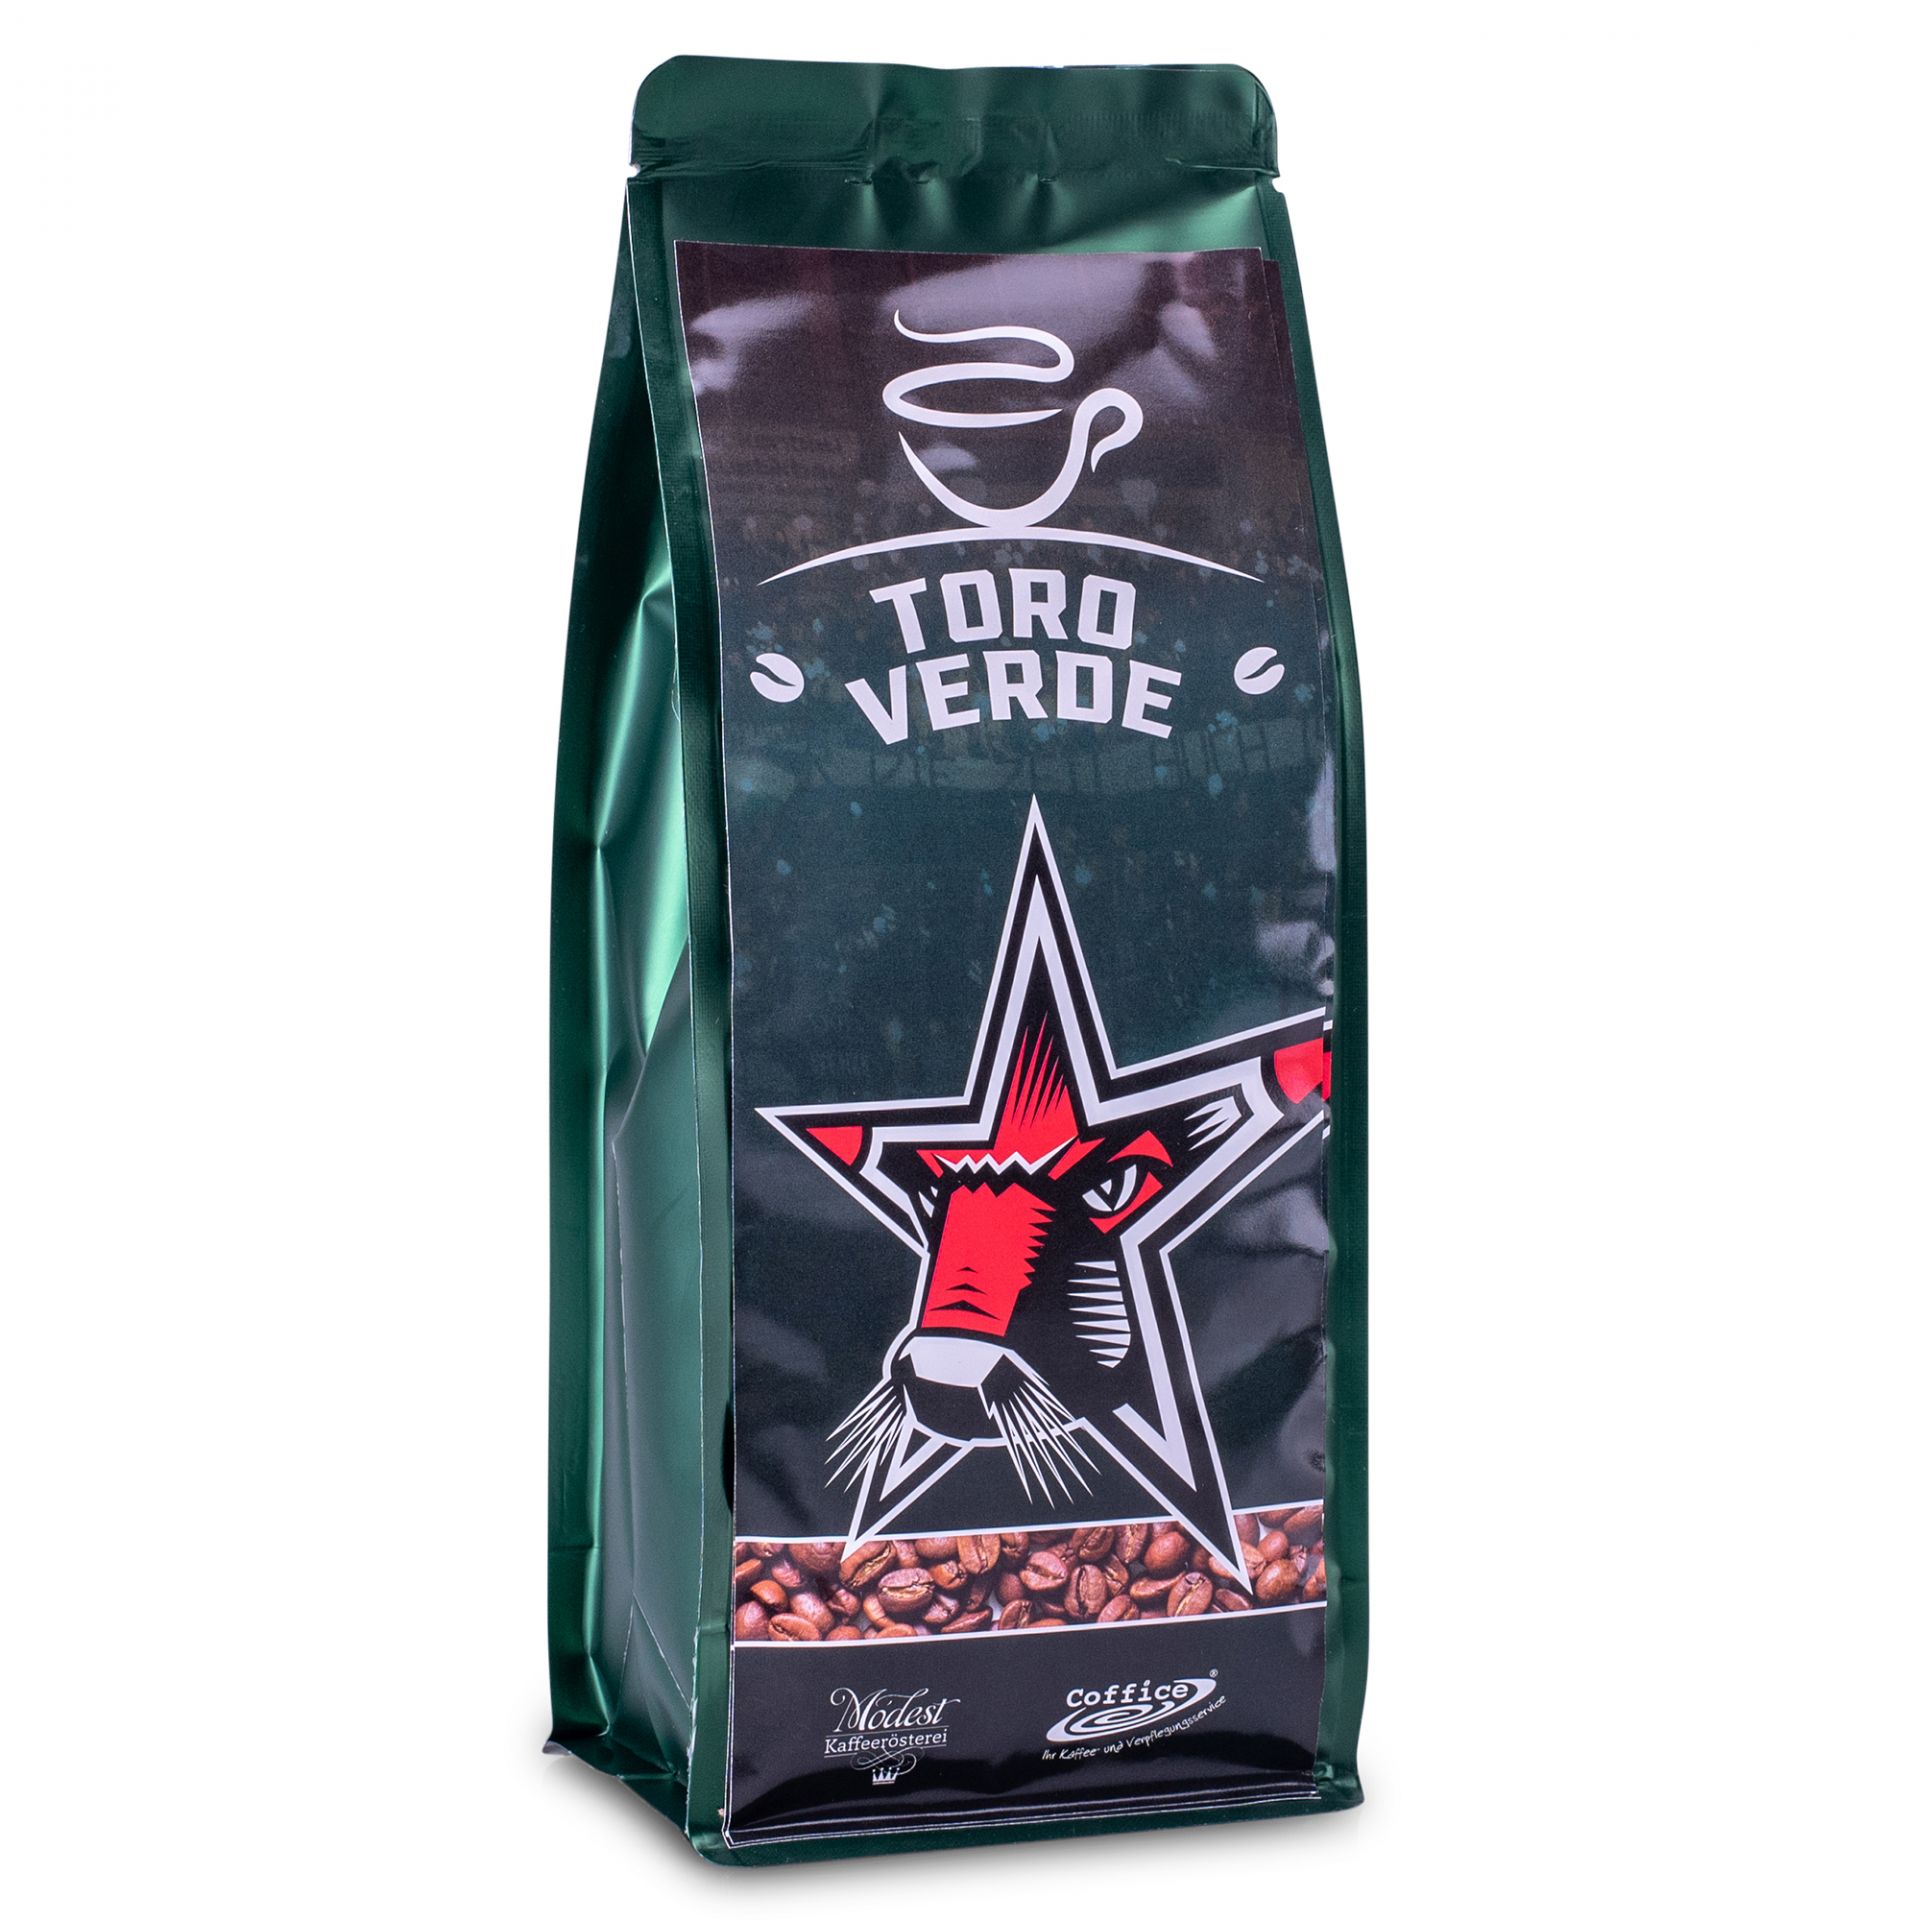 Espresso Starbulls "Toro Verde"